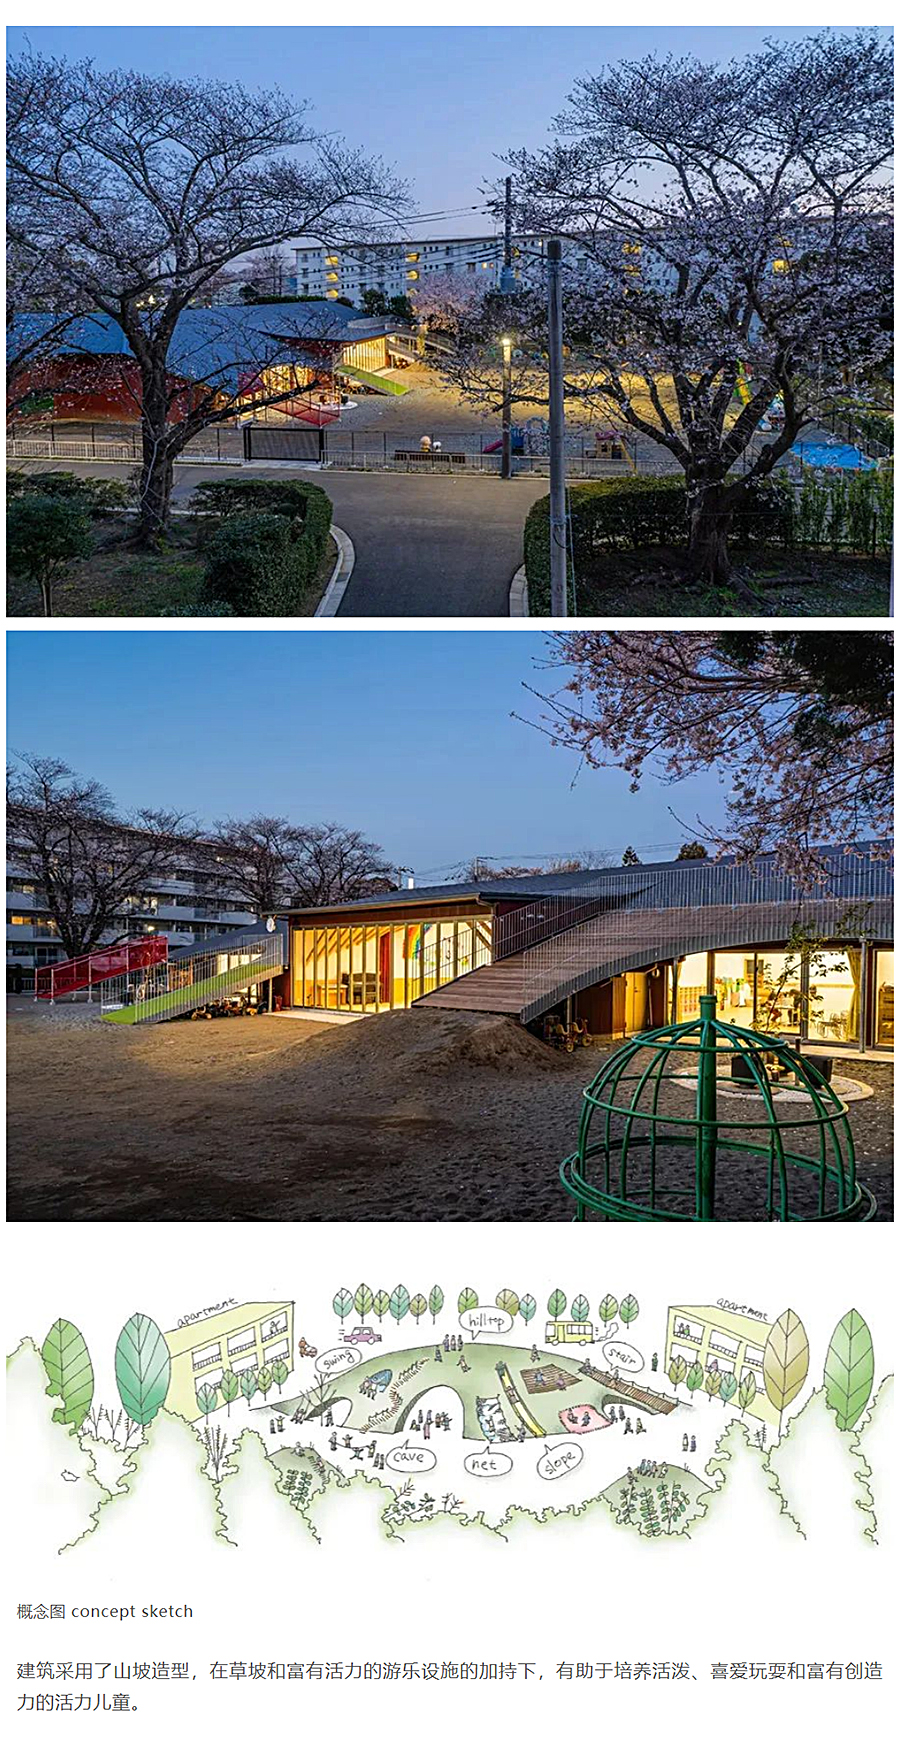 山丘幼儿园-│-50年历史的木结构建筑的变身_0003_图层-4.jpg